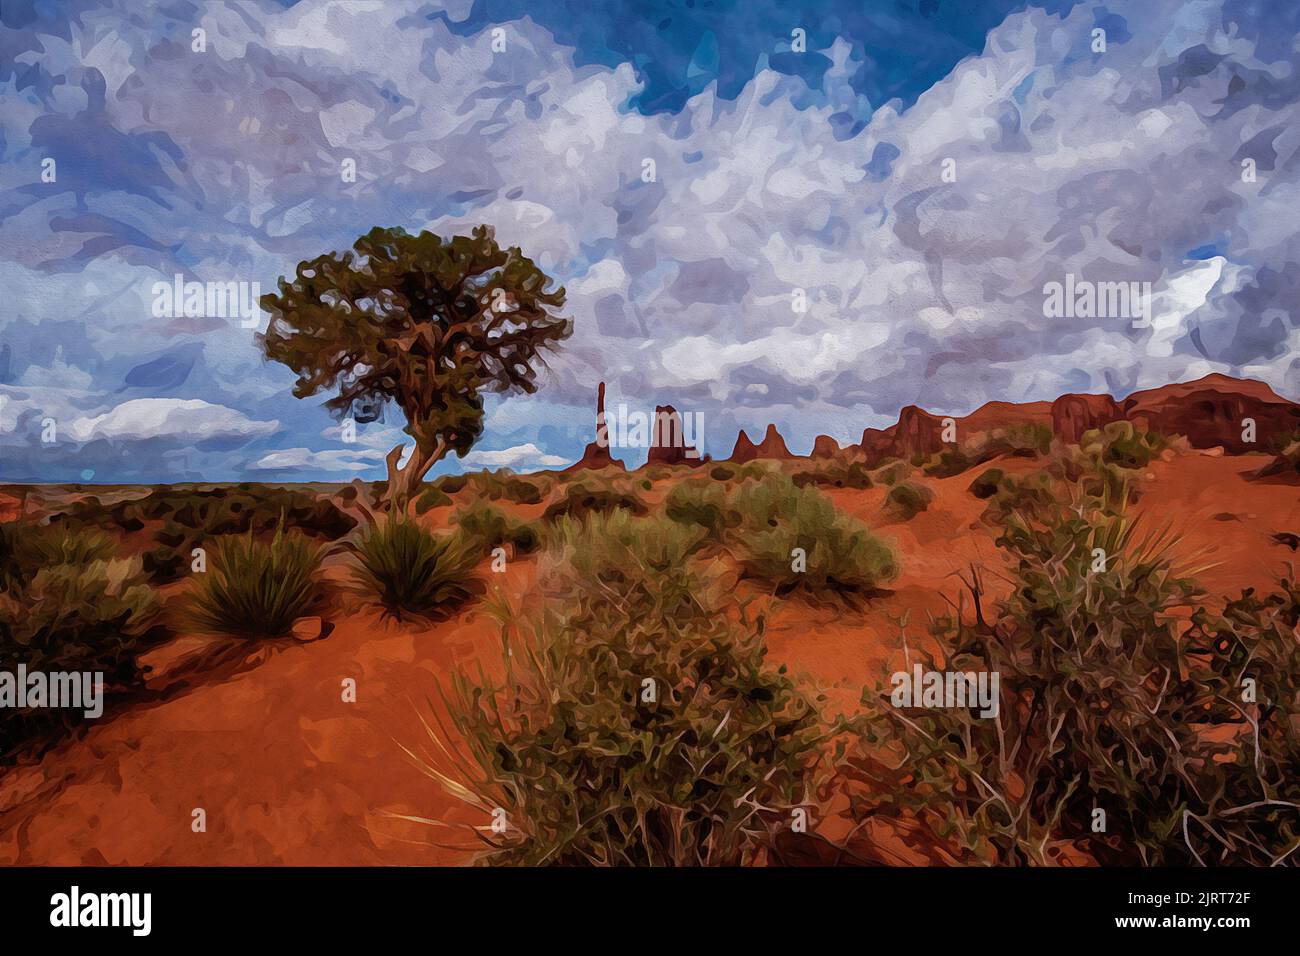 Peinture à l'aquarelle créée numériquement de formations de grès Totem pole et dunes de sable, Monument Valley, Arizona, États-Unis Banque D'Images